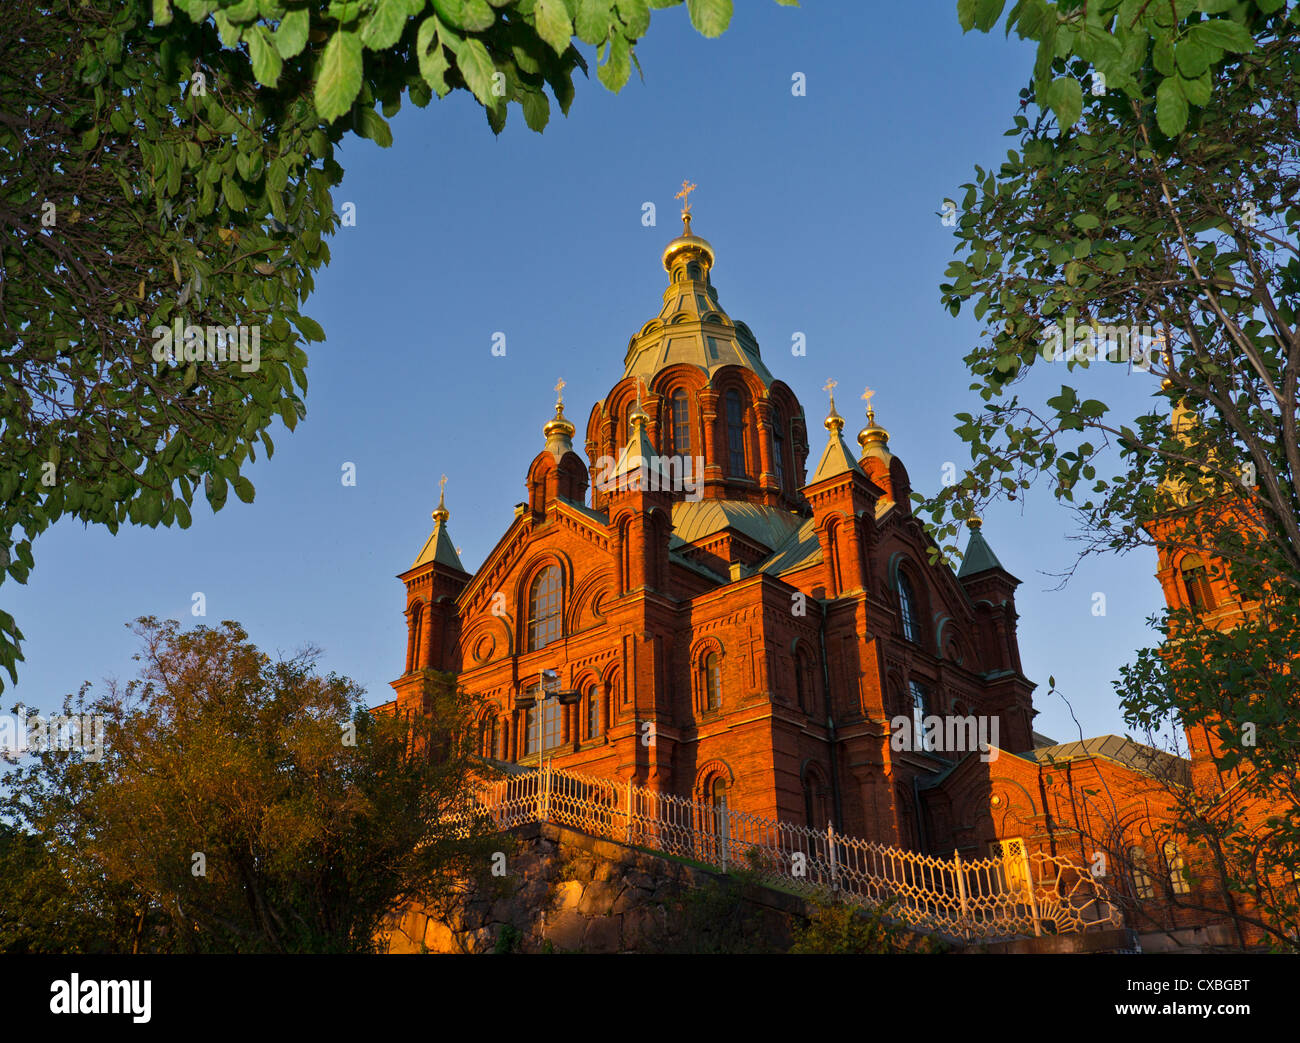 Cathédrale Uspenski cathédrale de l'Église russe () une cathédrale orthodoxe de l'Est donnant sur le port d'Helsinki, Finlande. Banque D'Images